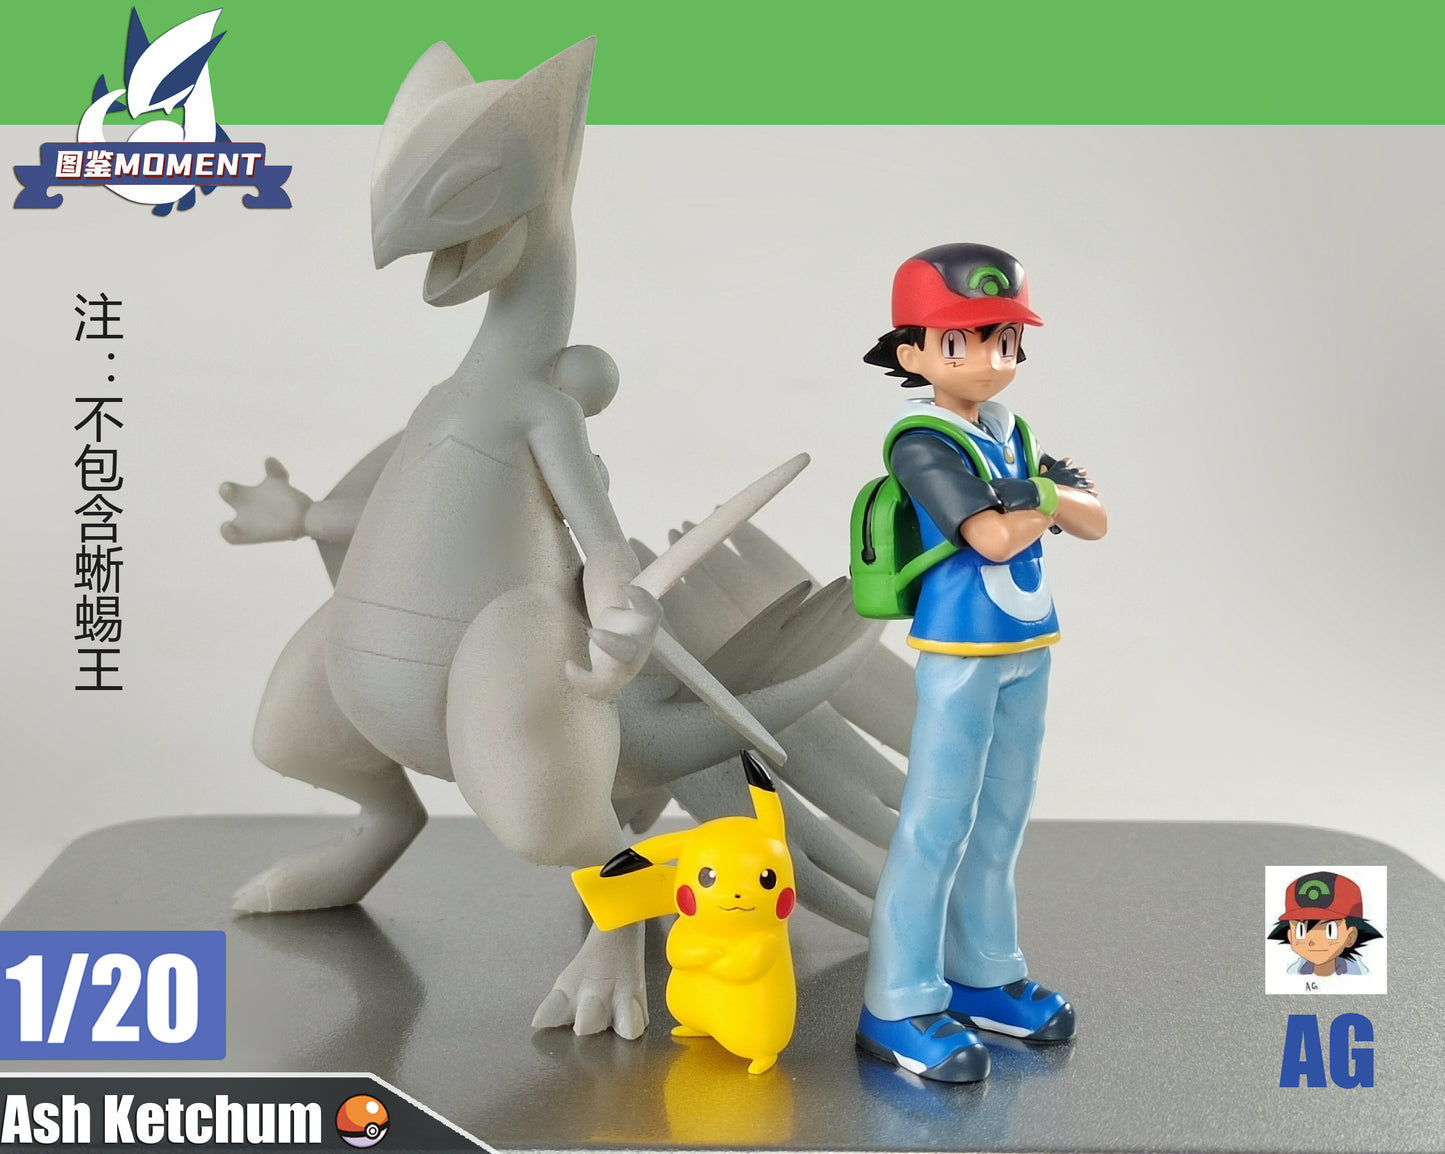 〖Make Up The Balance〗Pokemon Scale World AG Ash Ketchum 1:20  - Moment Studio